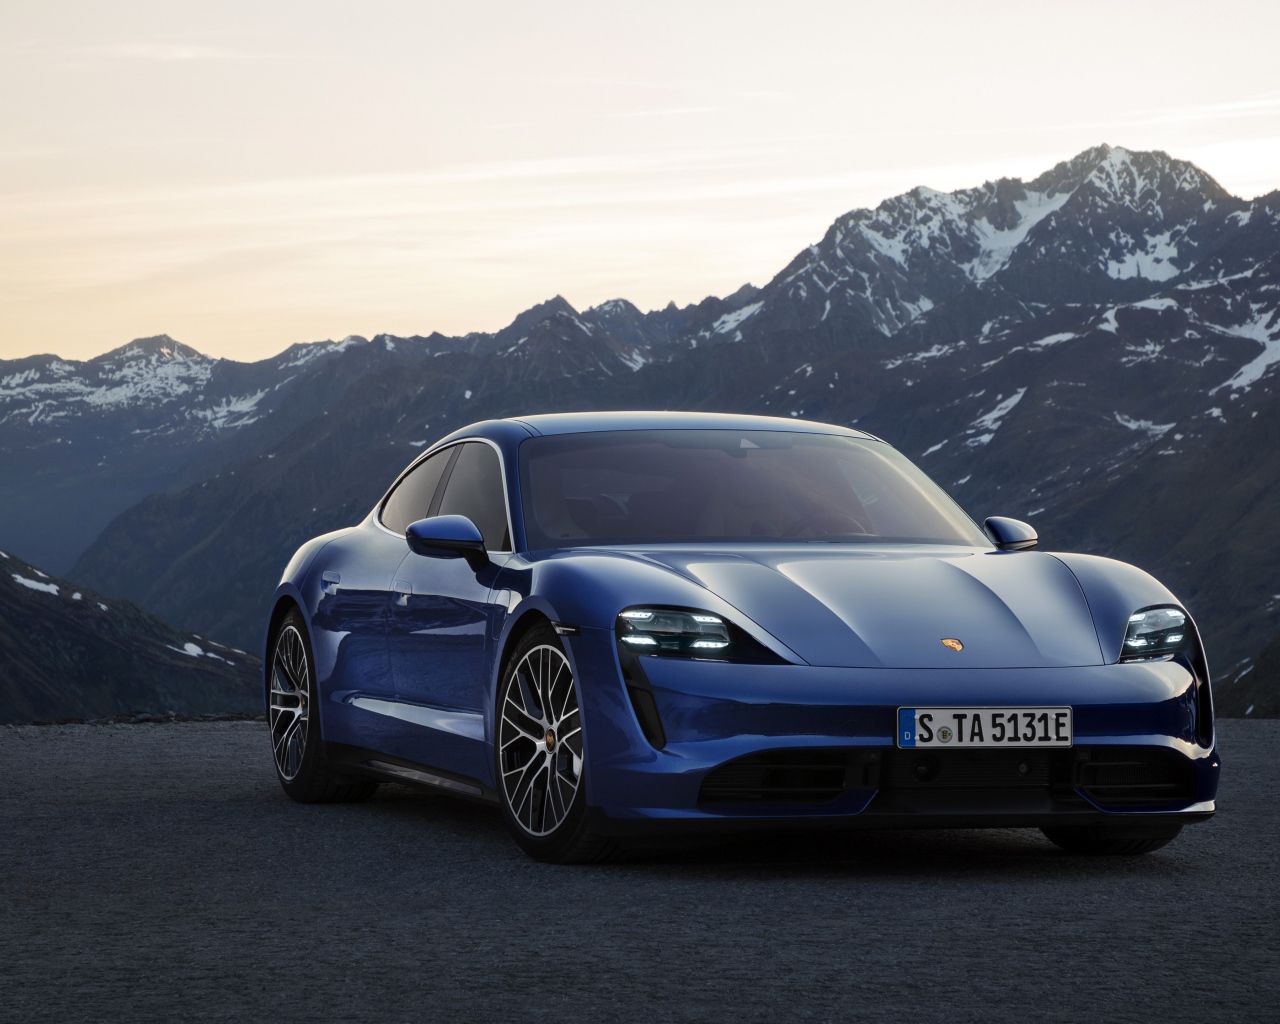 Синий стильный автомобиль Porsche Taycan Turbo 2019 года на фоне гор